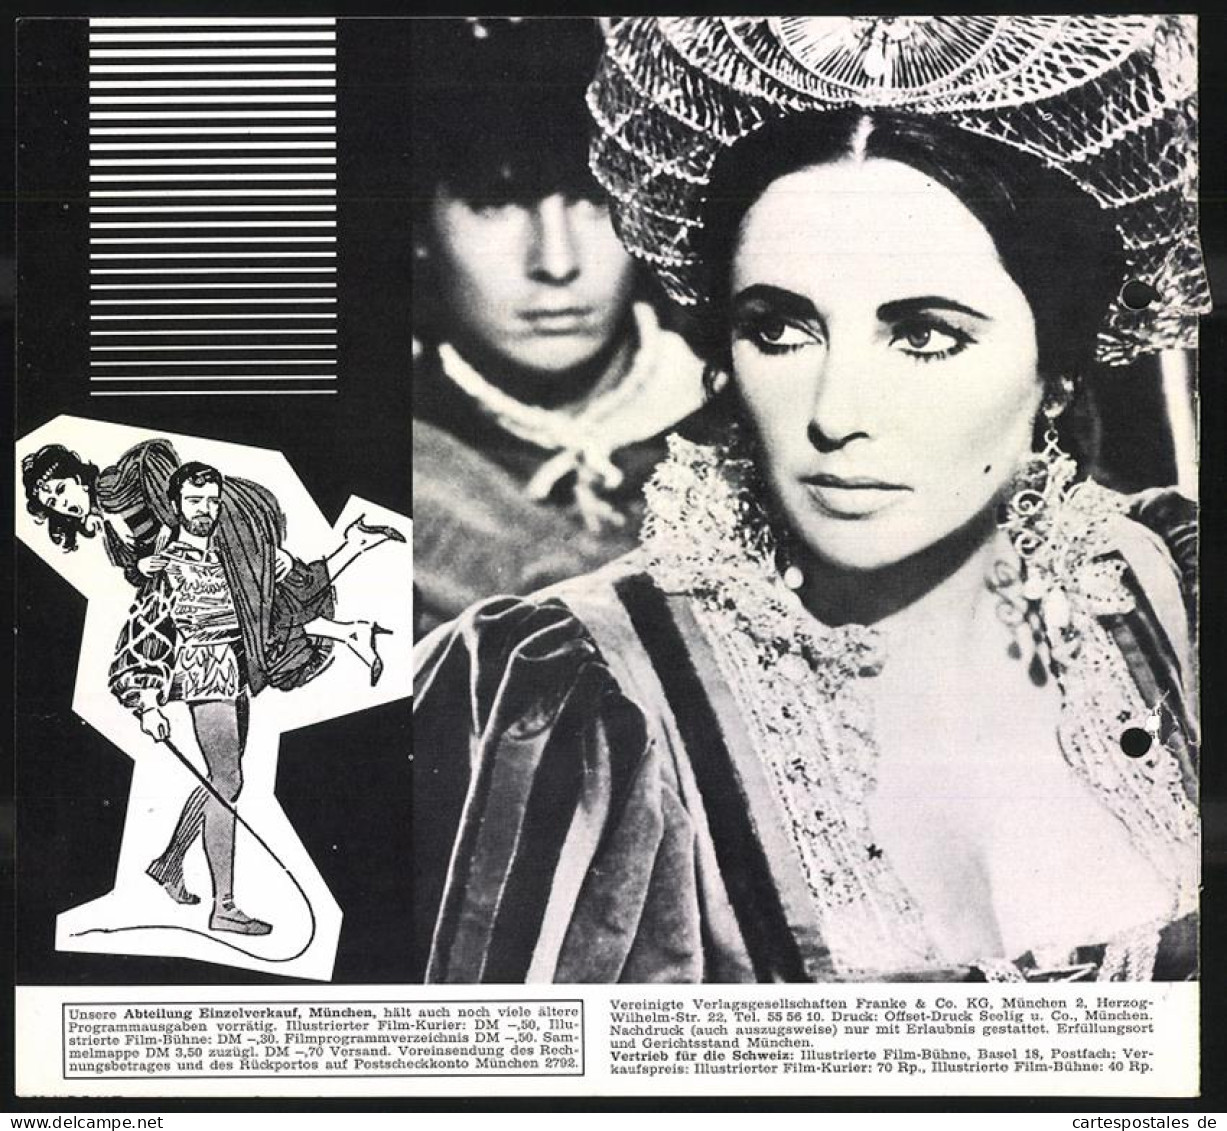 Filmprogramm IFK Nr. 193, Der Widerspenstigen Zähmung, Elizabeth Taylor, Richard Burton, Regie: Franco Zeffirelli  - Magazines